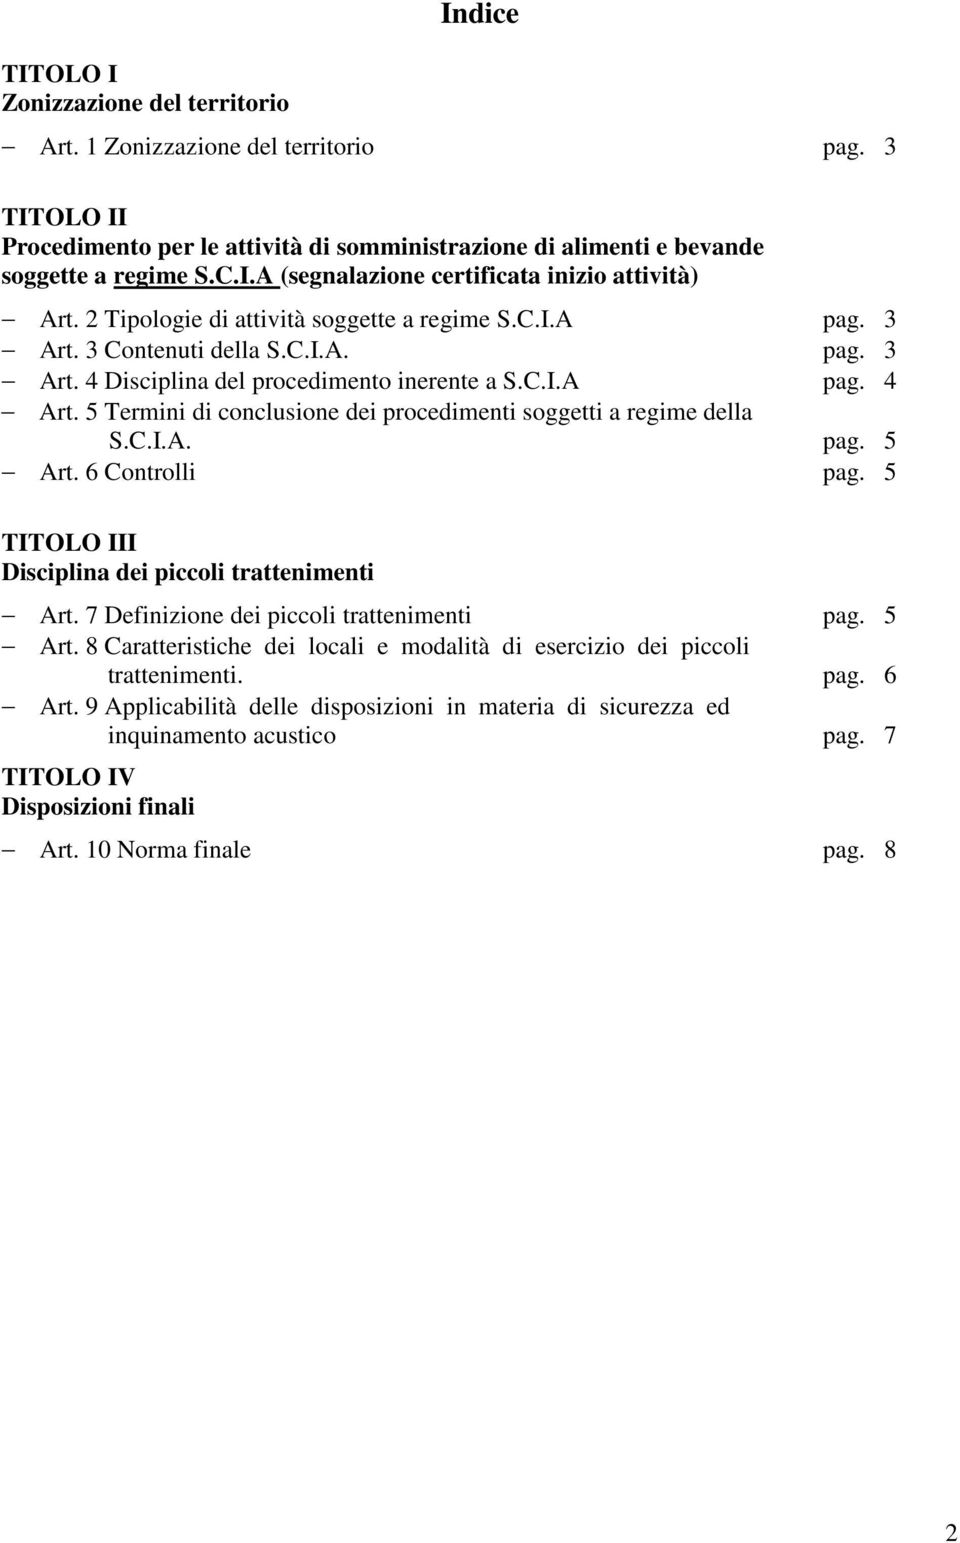 5 Termini di conclusione dei procedimenti soggetti a regime della S.C.I.A. pag. 5 Art. 6 Controlli pag. 5 TITOLO III Disciplina dei piccoli trattenimenti Art.